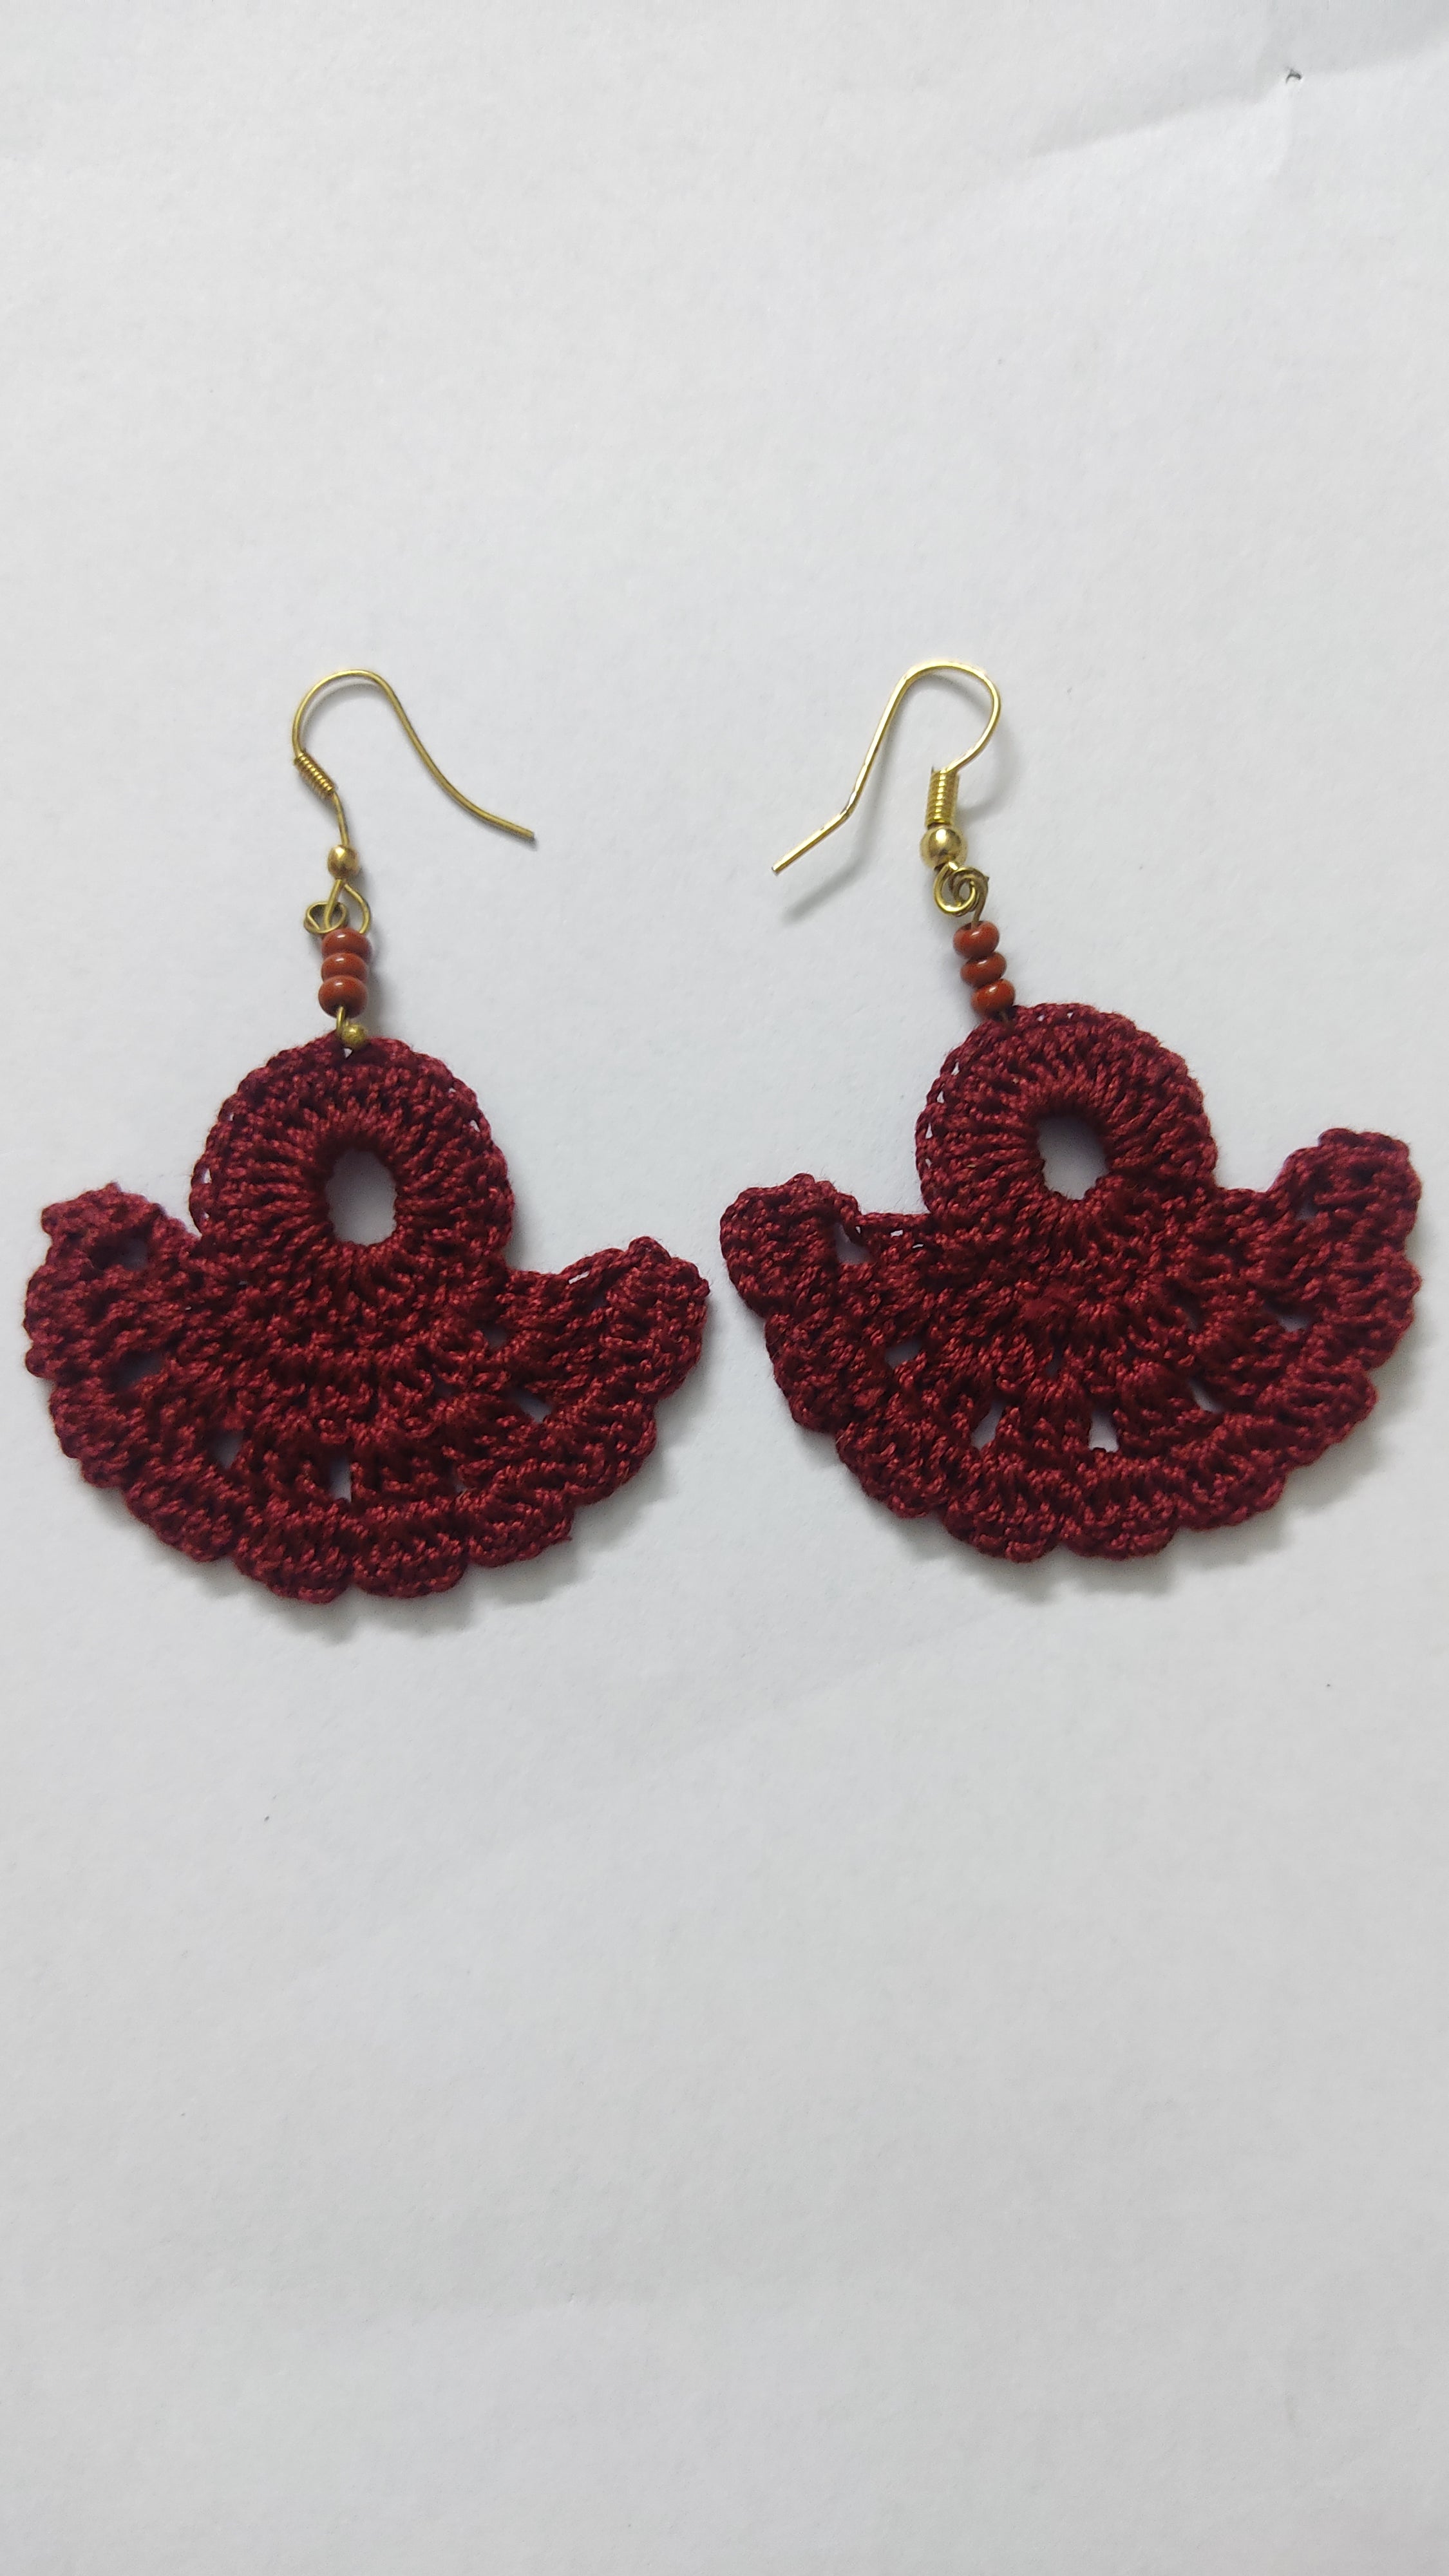 Ferris Wheel Crochet Earrings – The Yarn Bowl Crochet